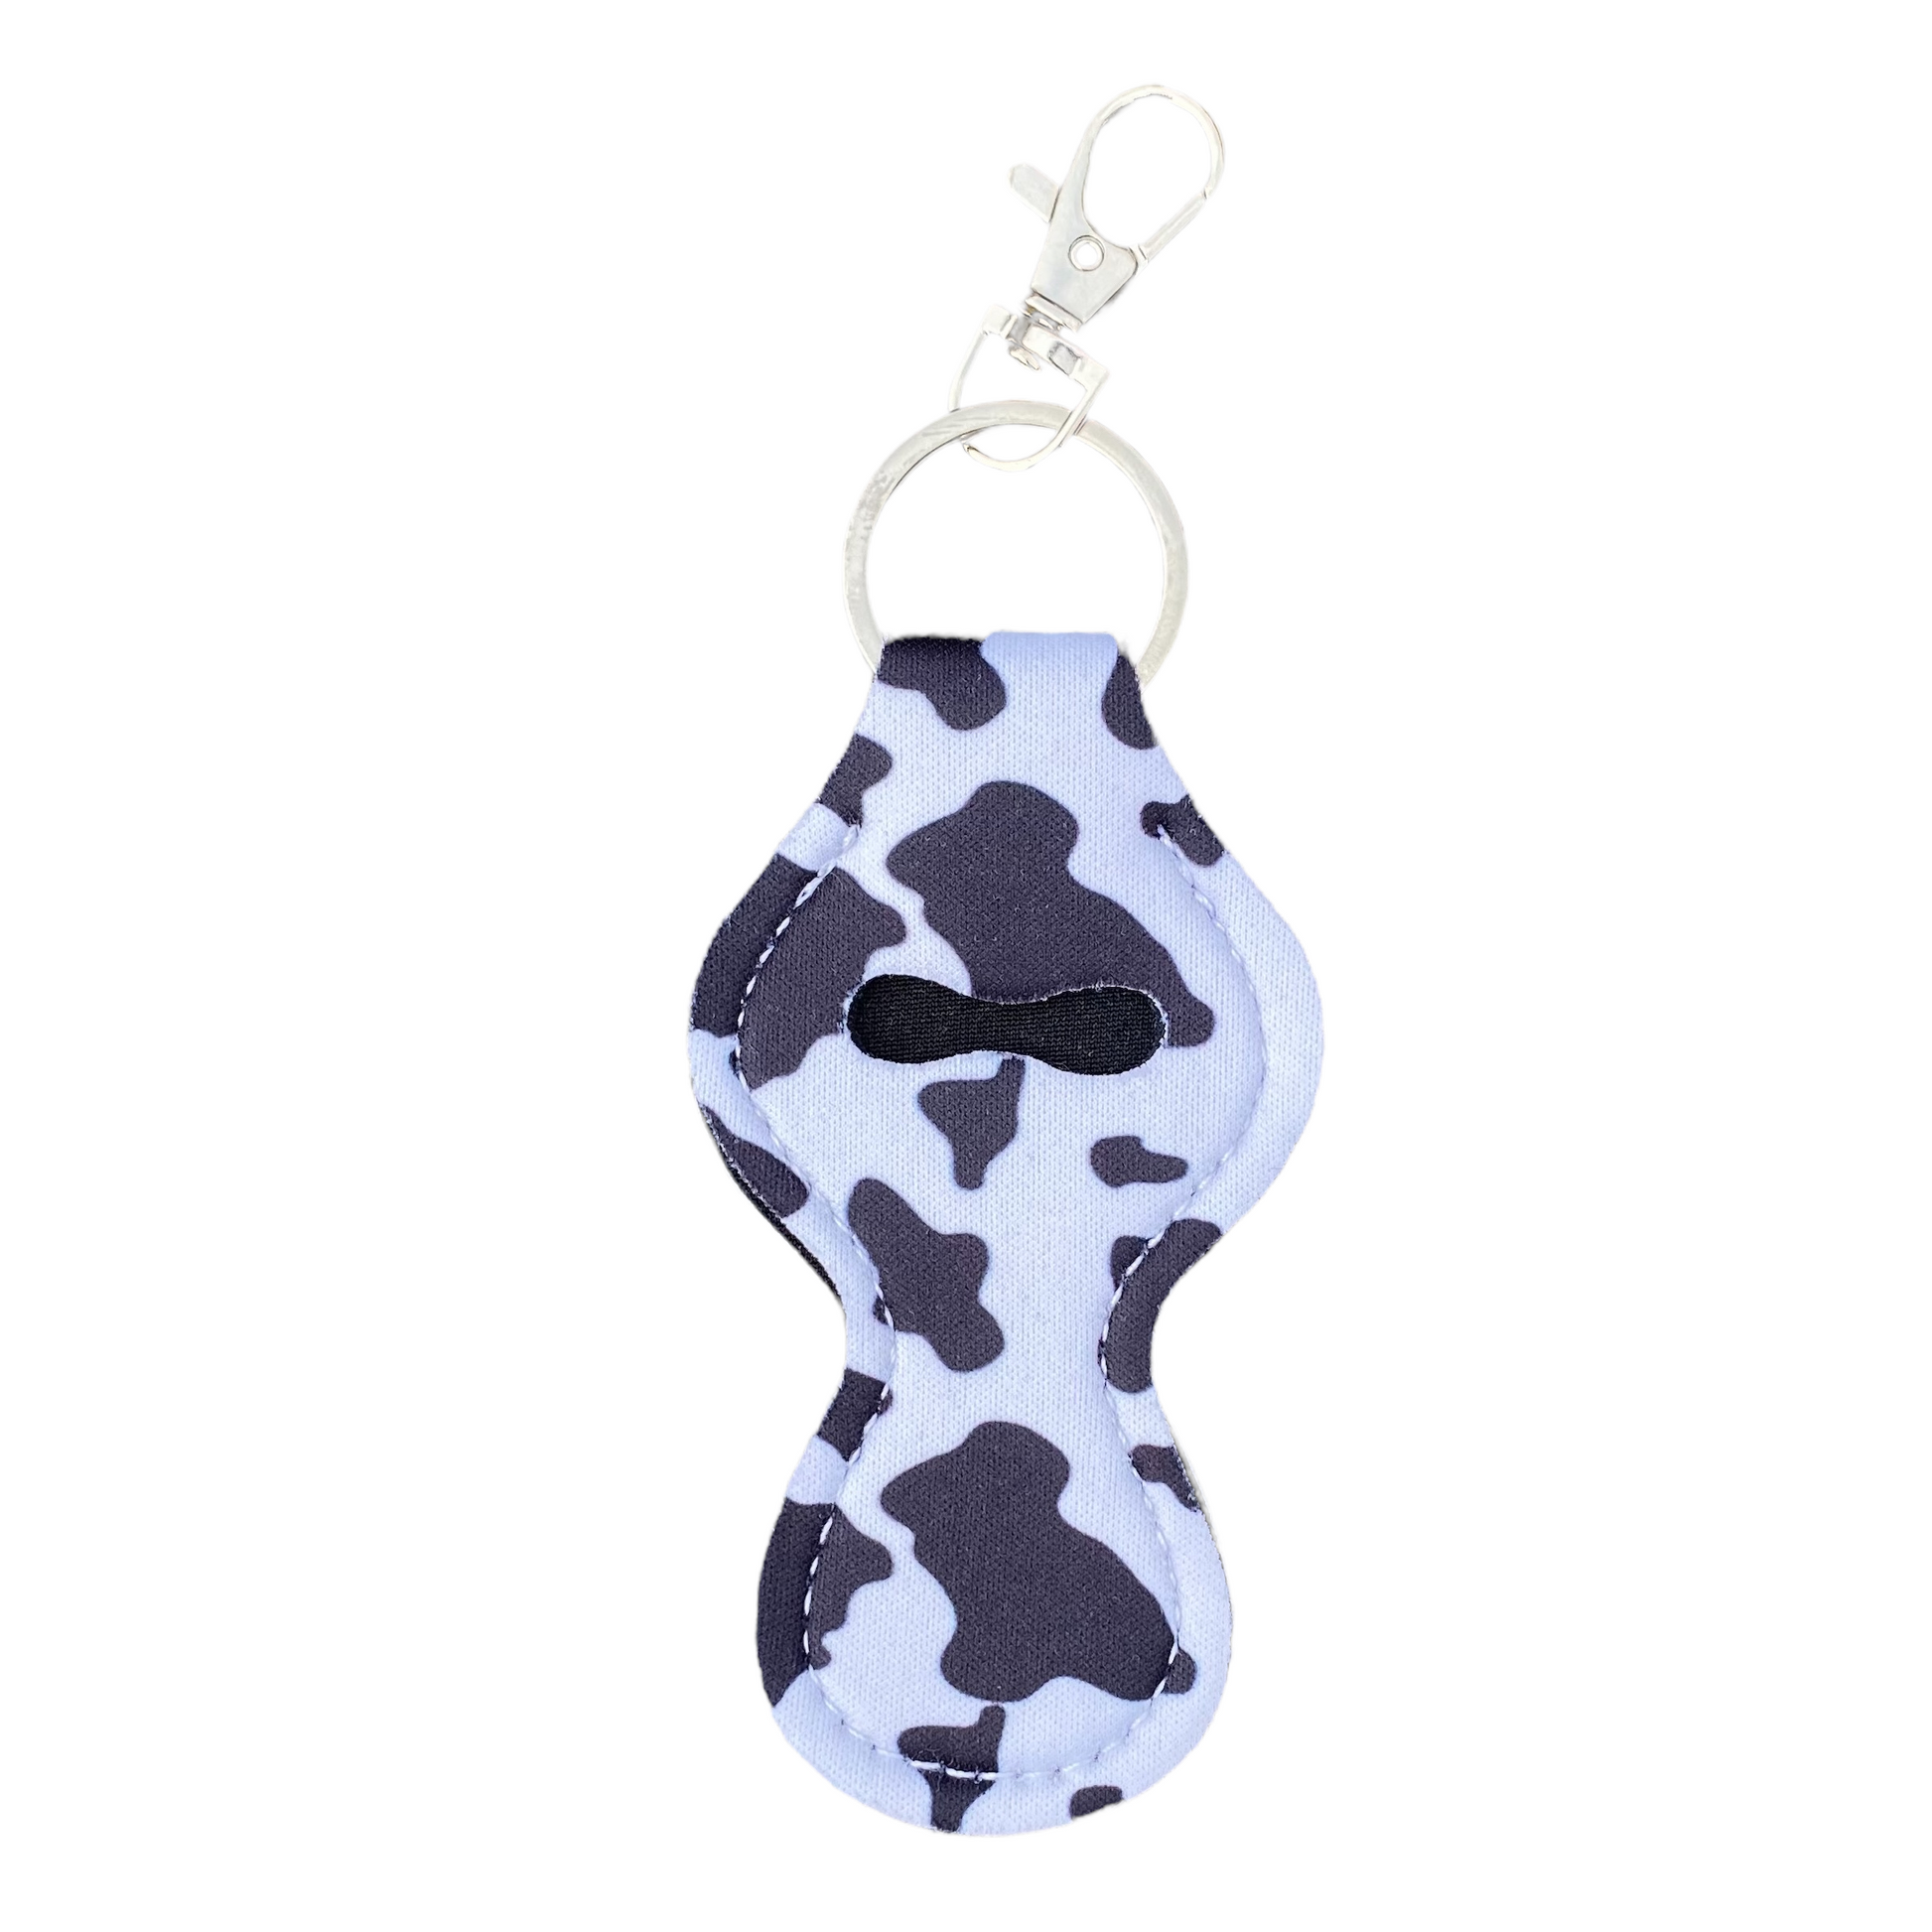 Keyring — Lipstick/Chapstick Holder Keychains SPIRIT SPARKPLUGS Cow Hide  